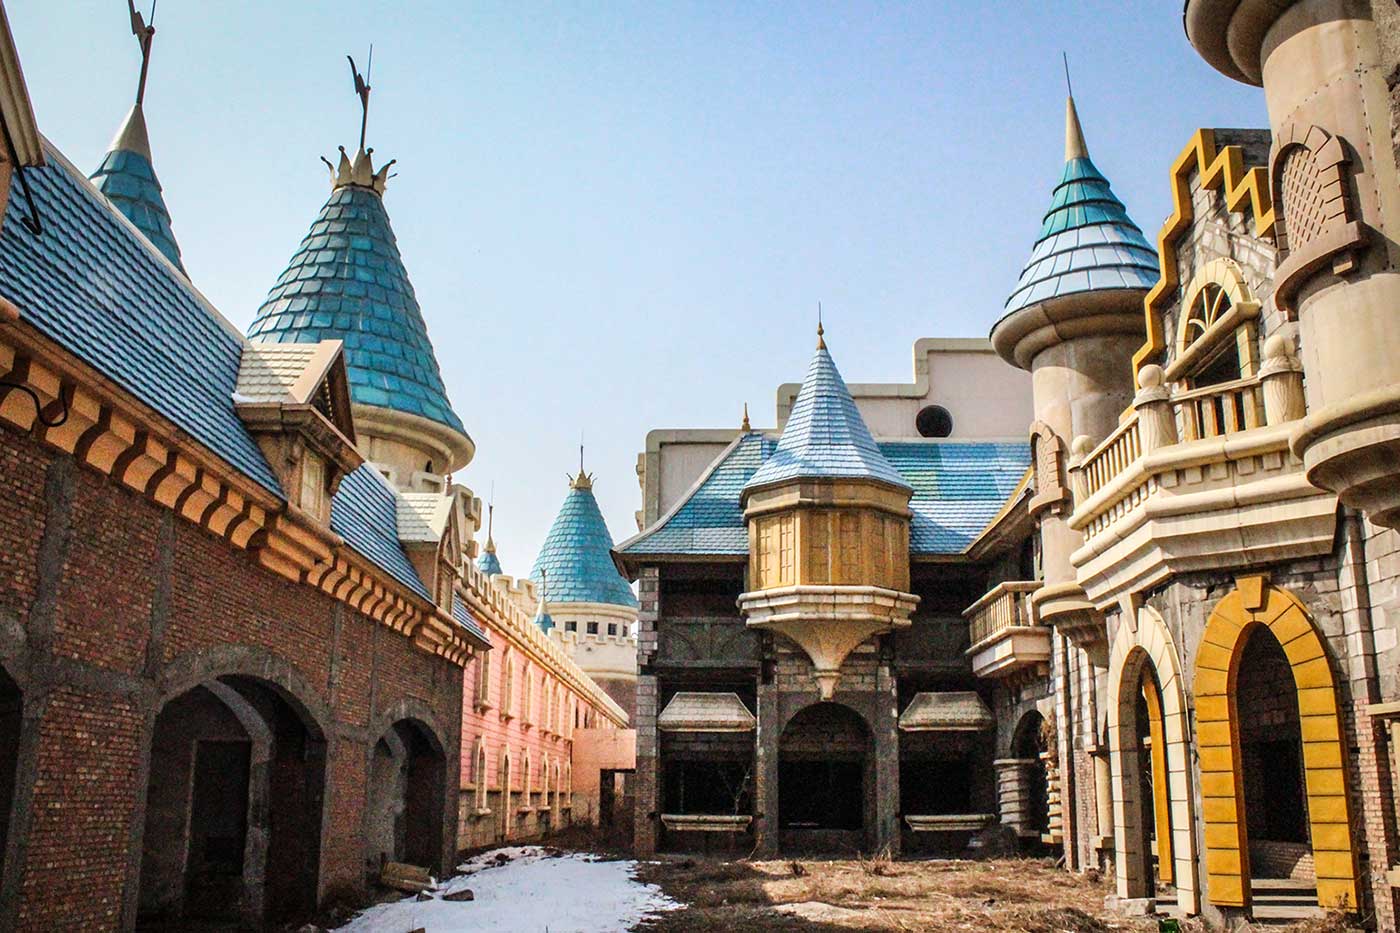 Wonderland: China's Abandoned Theme Park